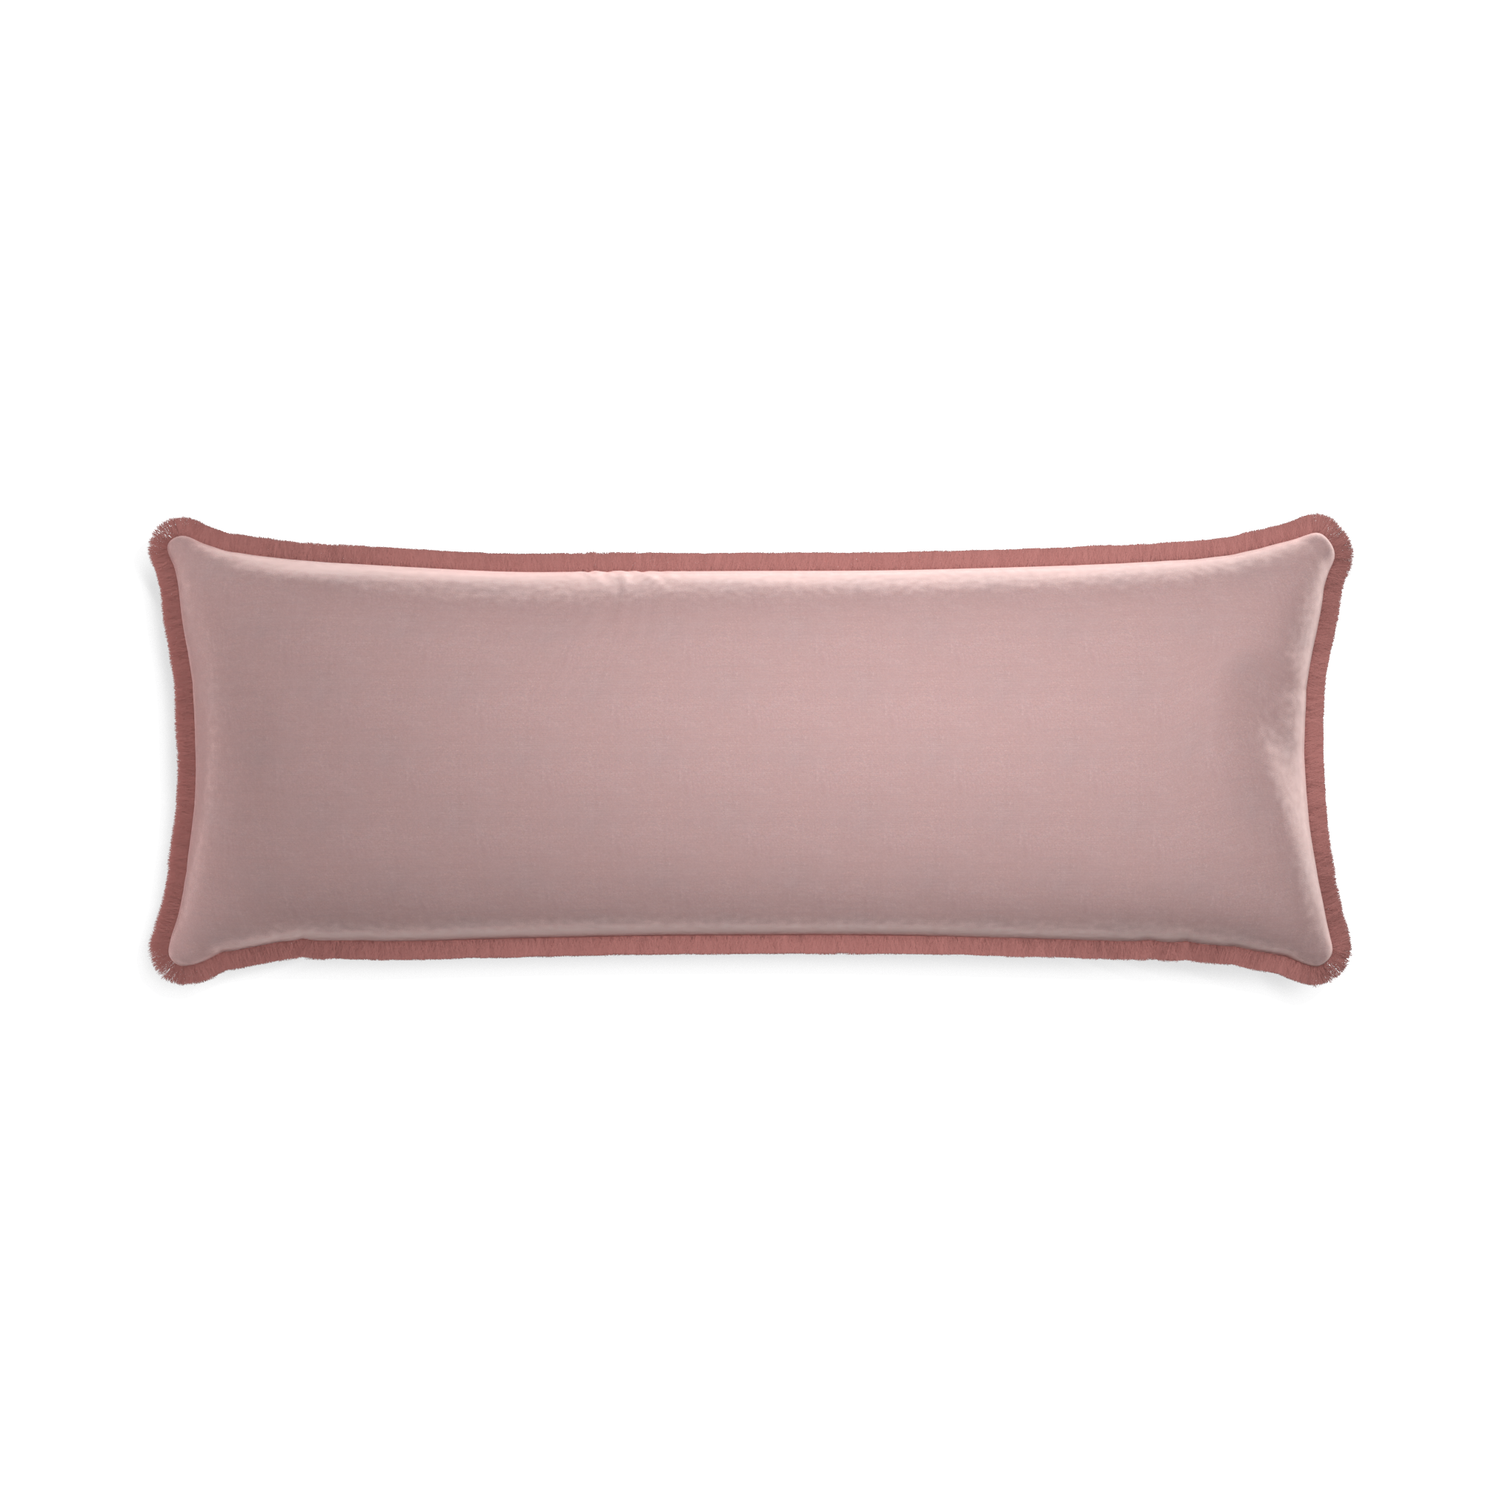 rectangle mauve velvet pillow with dusty rose fringe